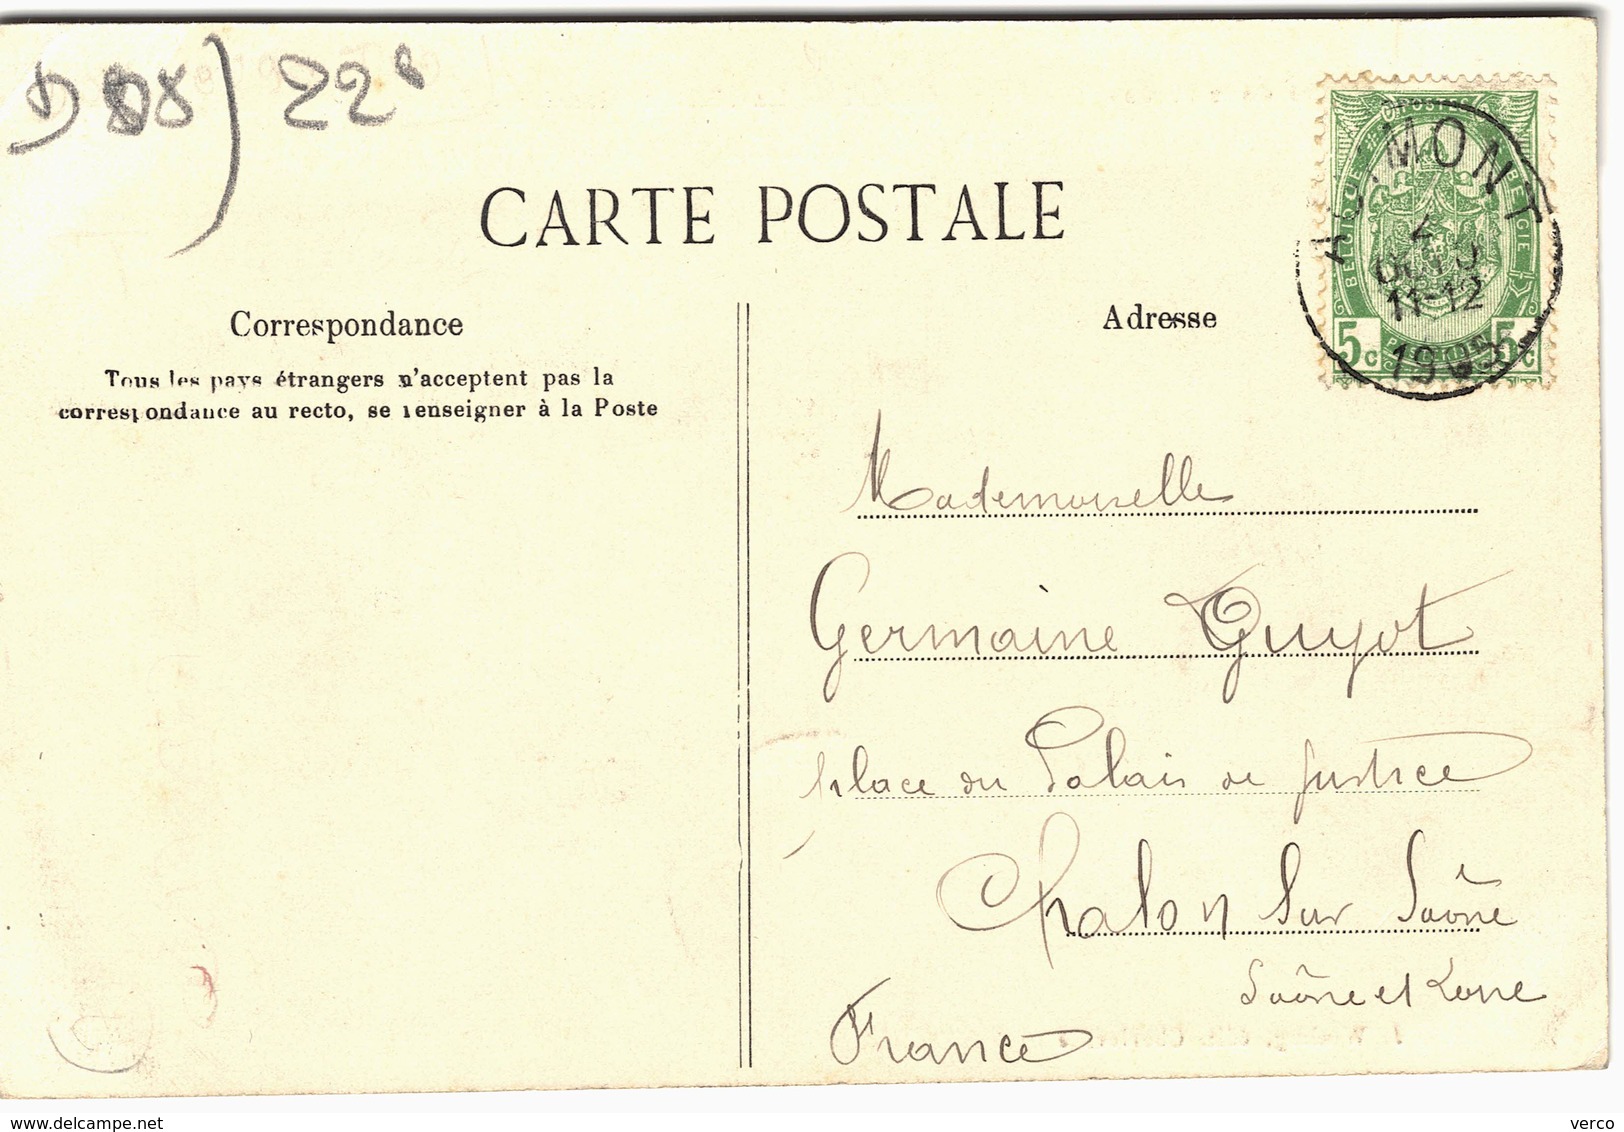 Carte Postale ancienne de GIVET, Maison blanche, frontière de la Belgique